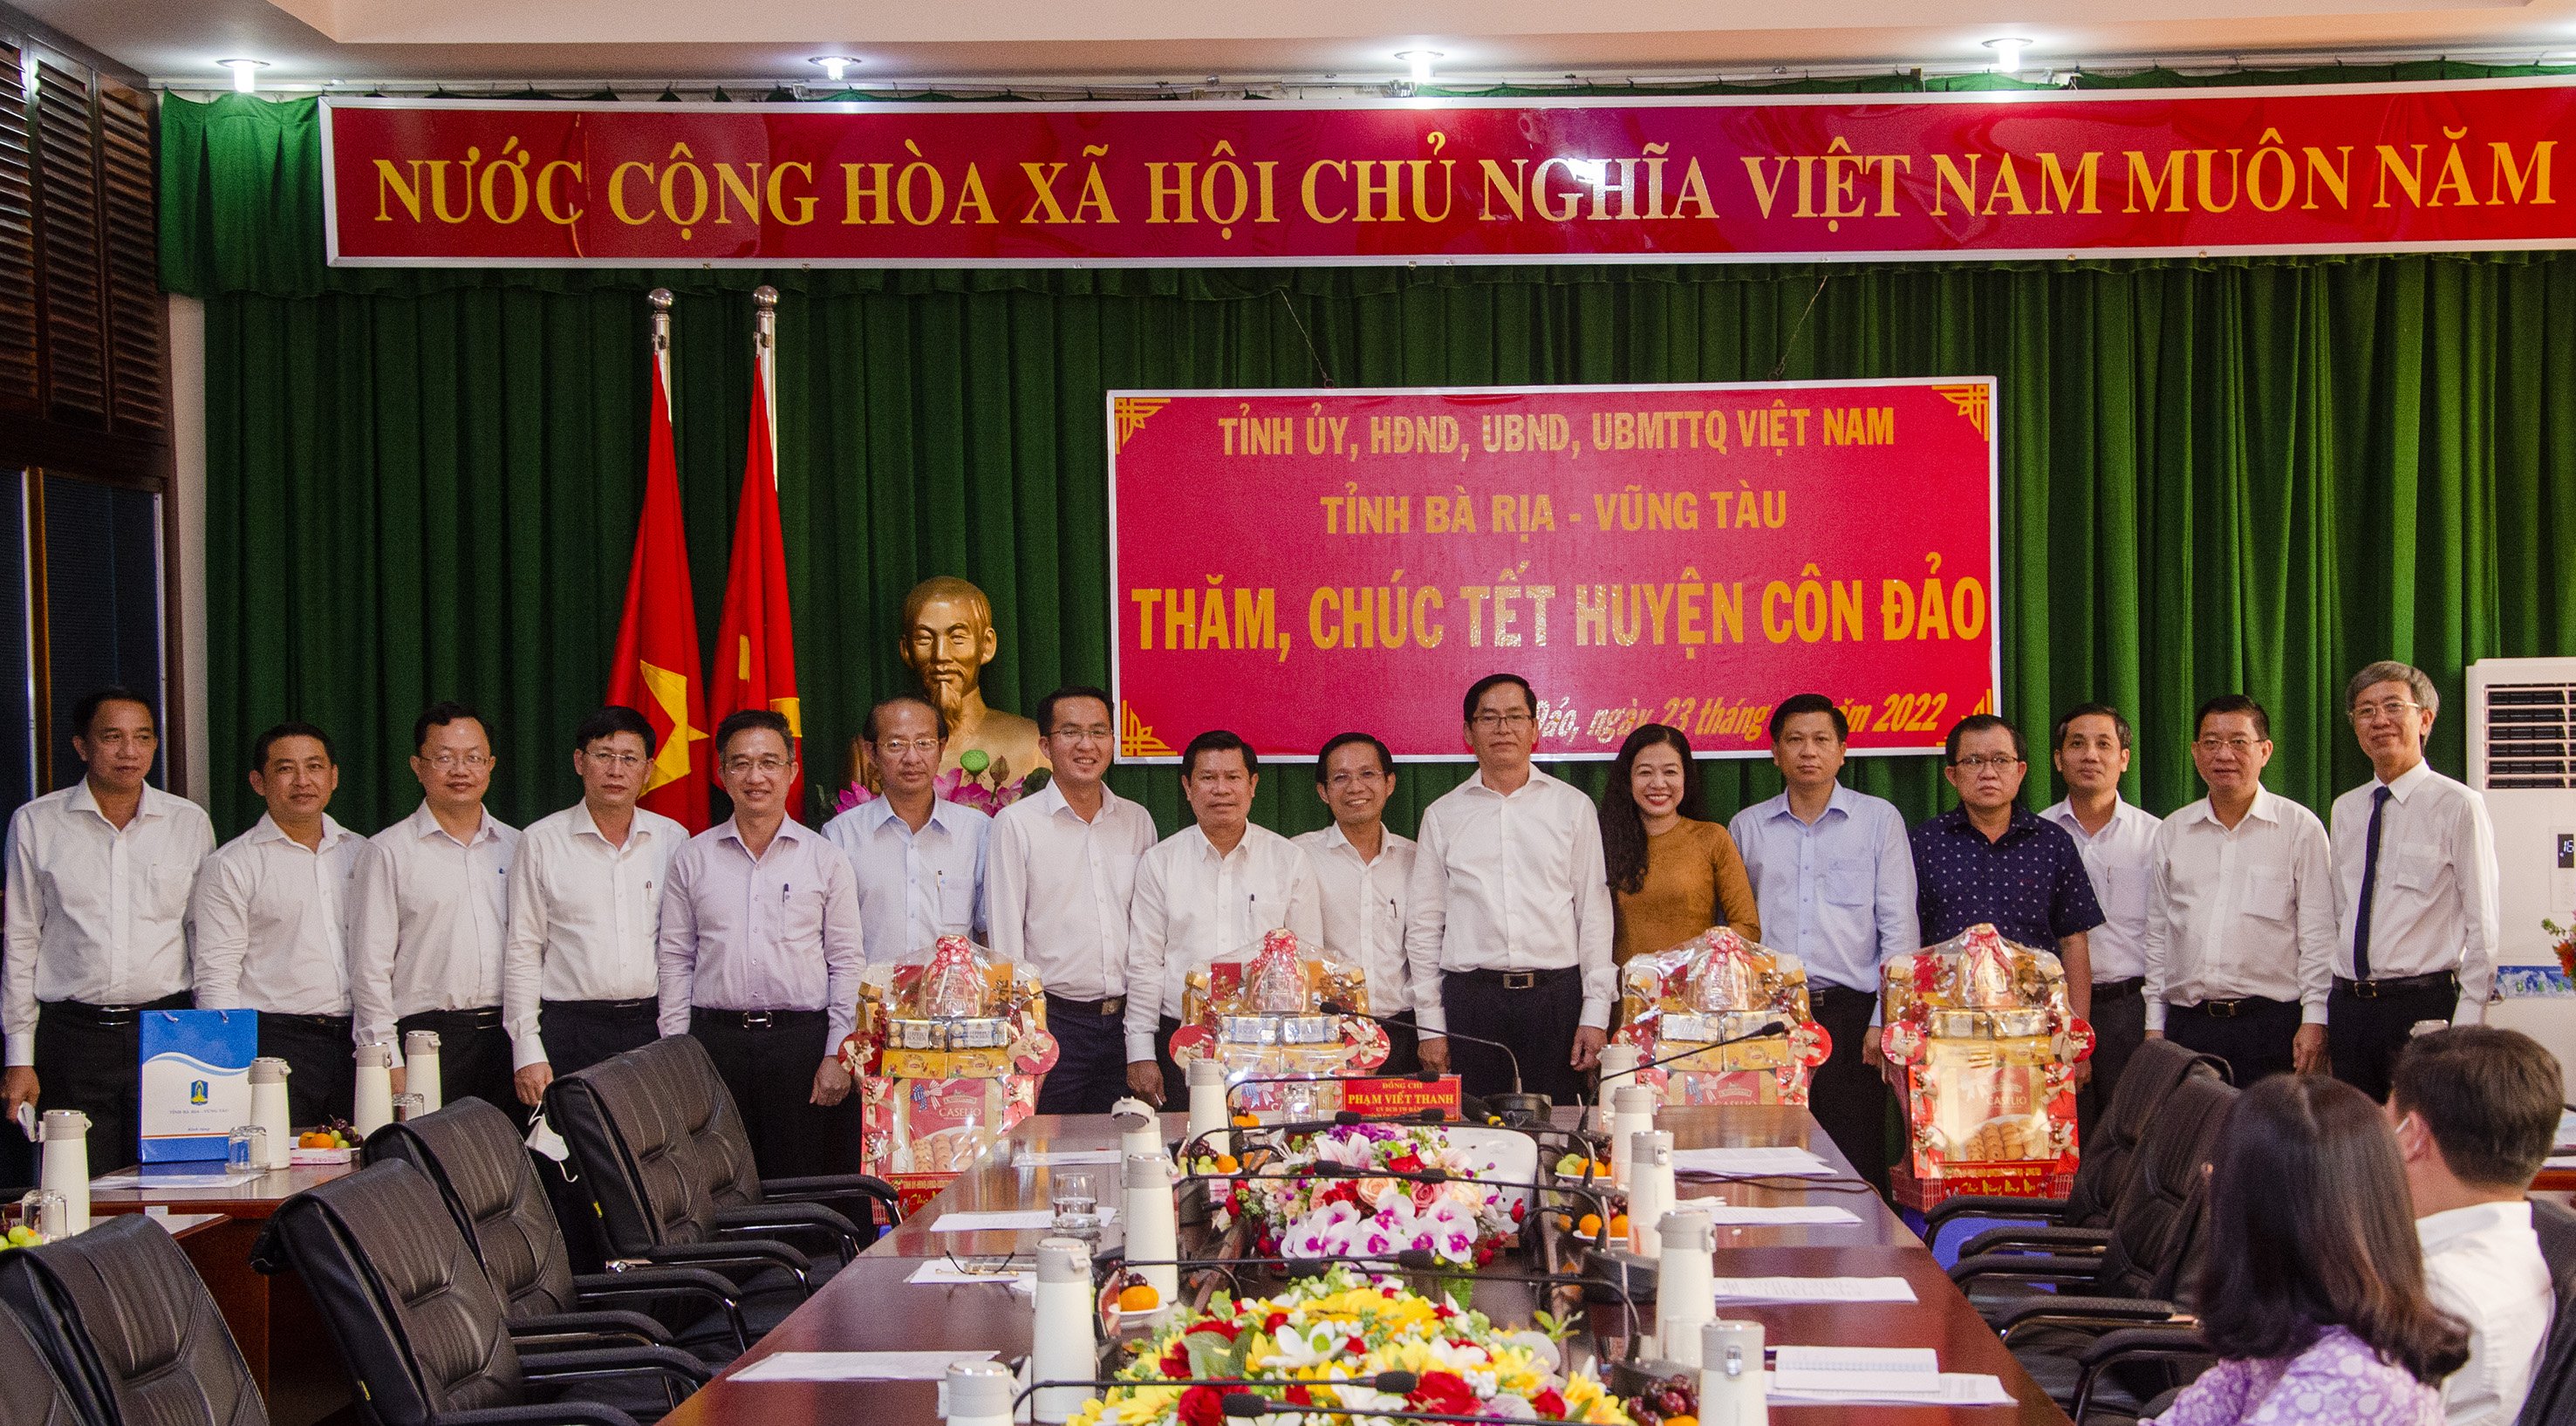 Lãnh đạo Tỉnh ủy, HĐND, UBND, UBMTTQ Việt Nam tỉnh chúc Tết và tặng quà lãnh đạo huyện Côn Đảo.